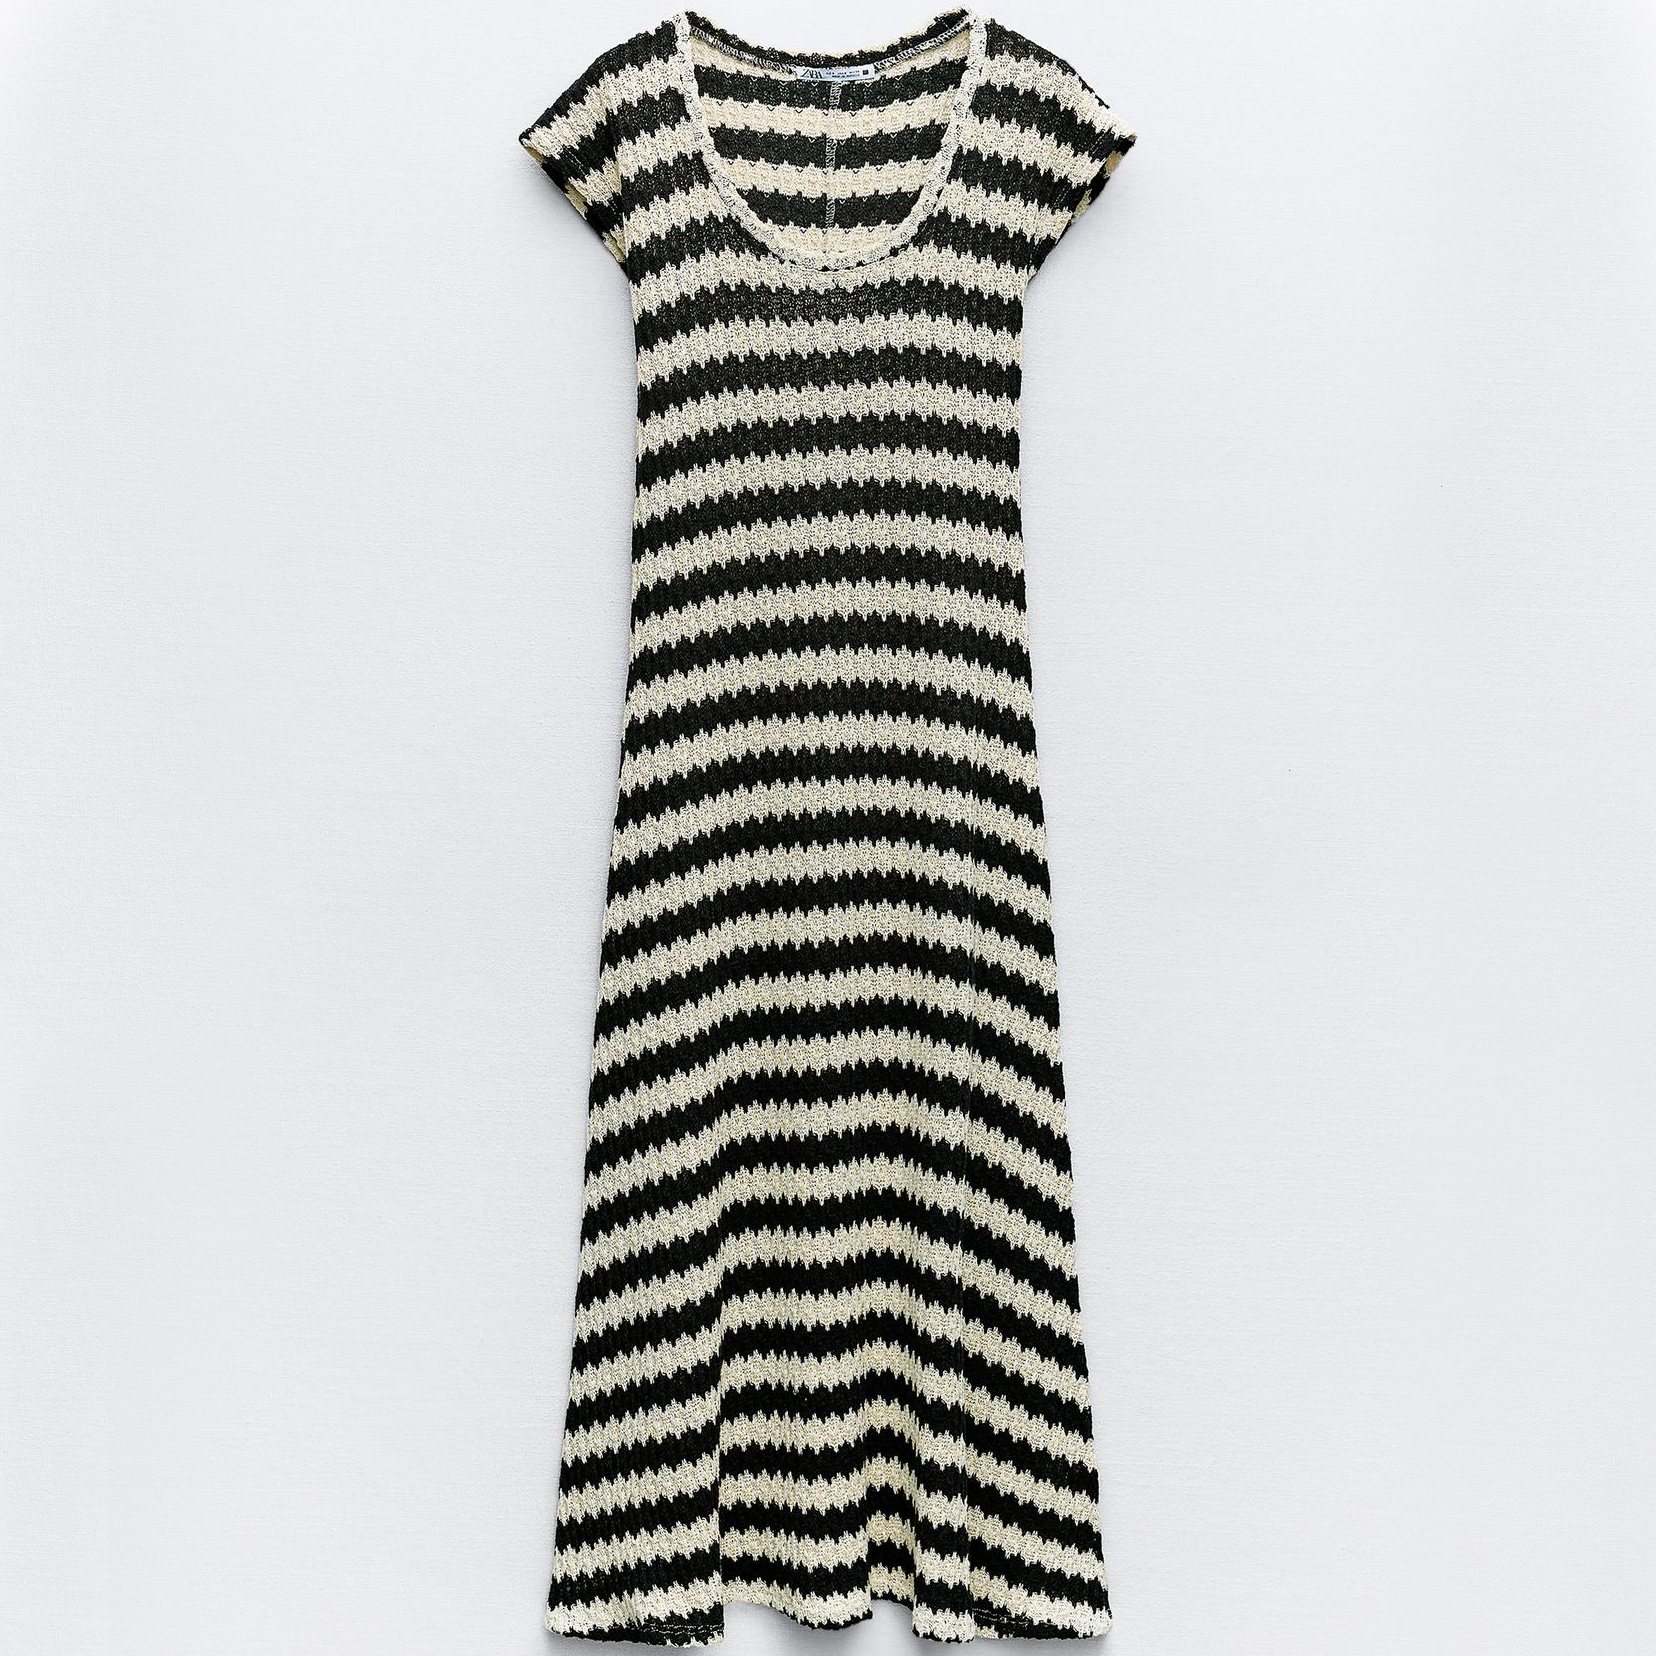 Платье Zara Striped Rustic, черный/кремово-белый платье длинное с короткими рукавами l синий